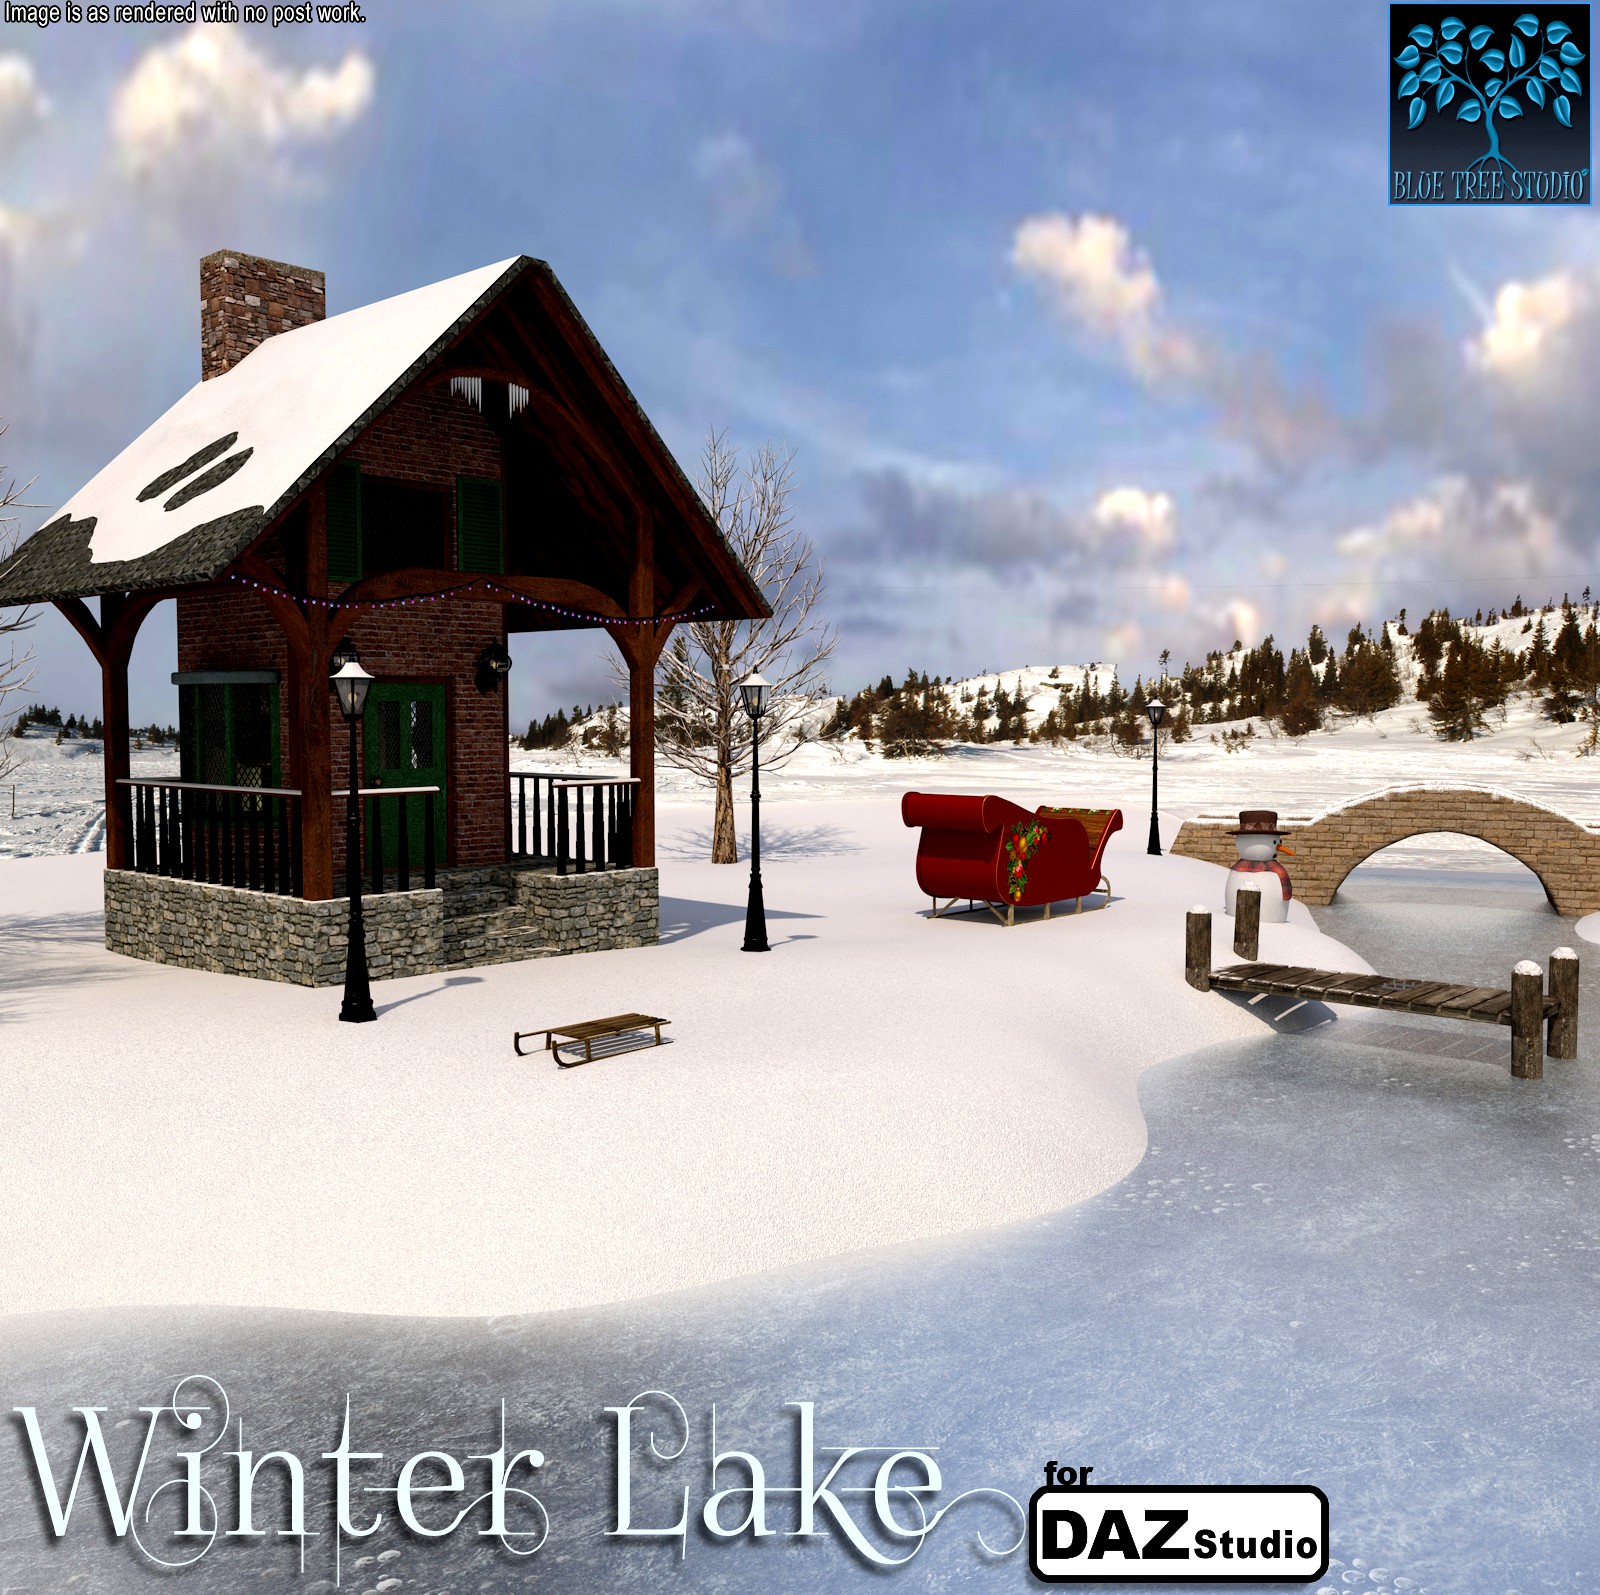 Winter Lake for Daz Studio